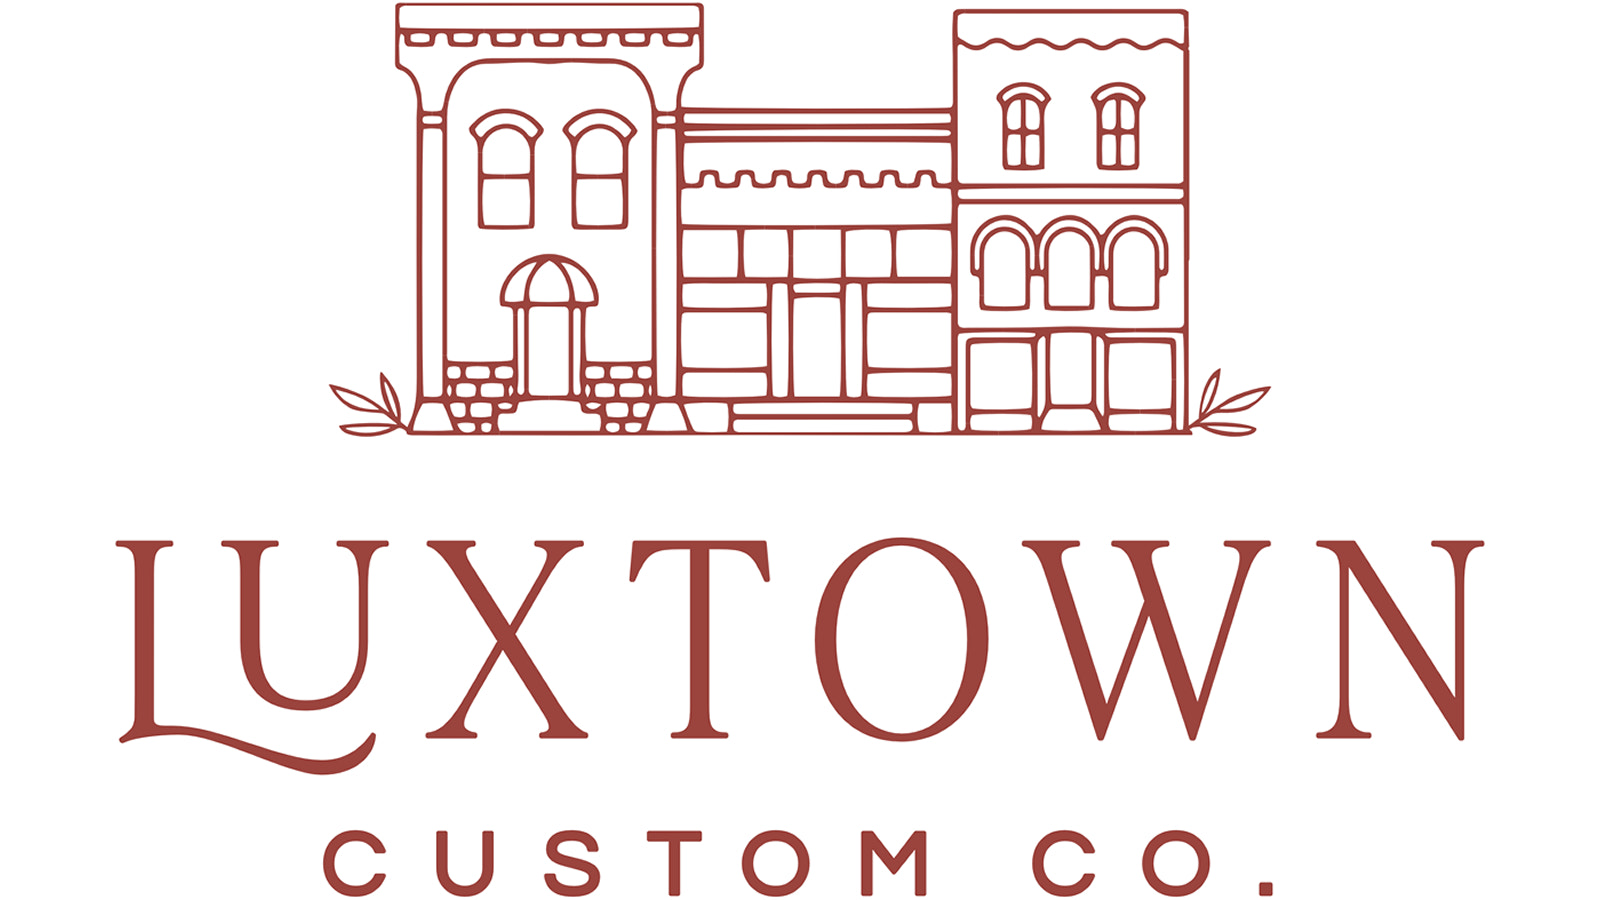 Luxtown individuelle Produkte: kleine Luxusartikel zu praktischen Preisen